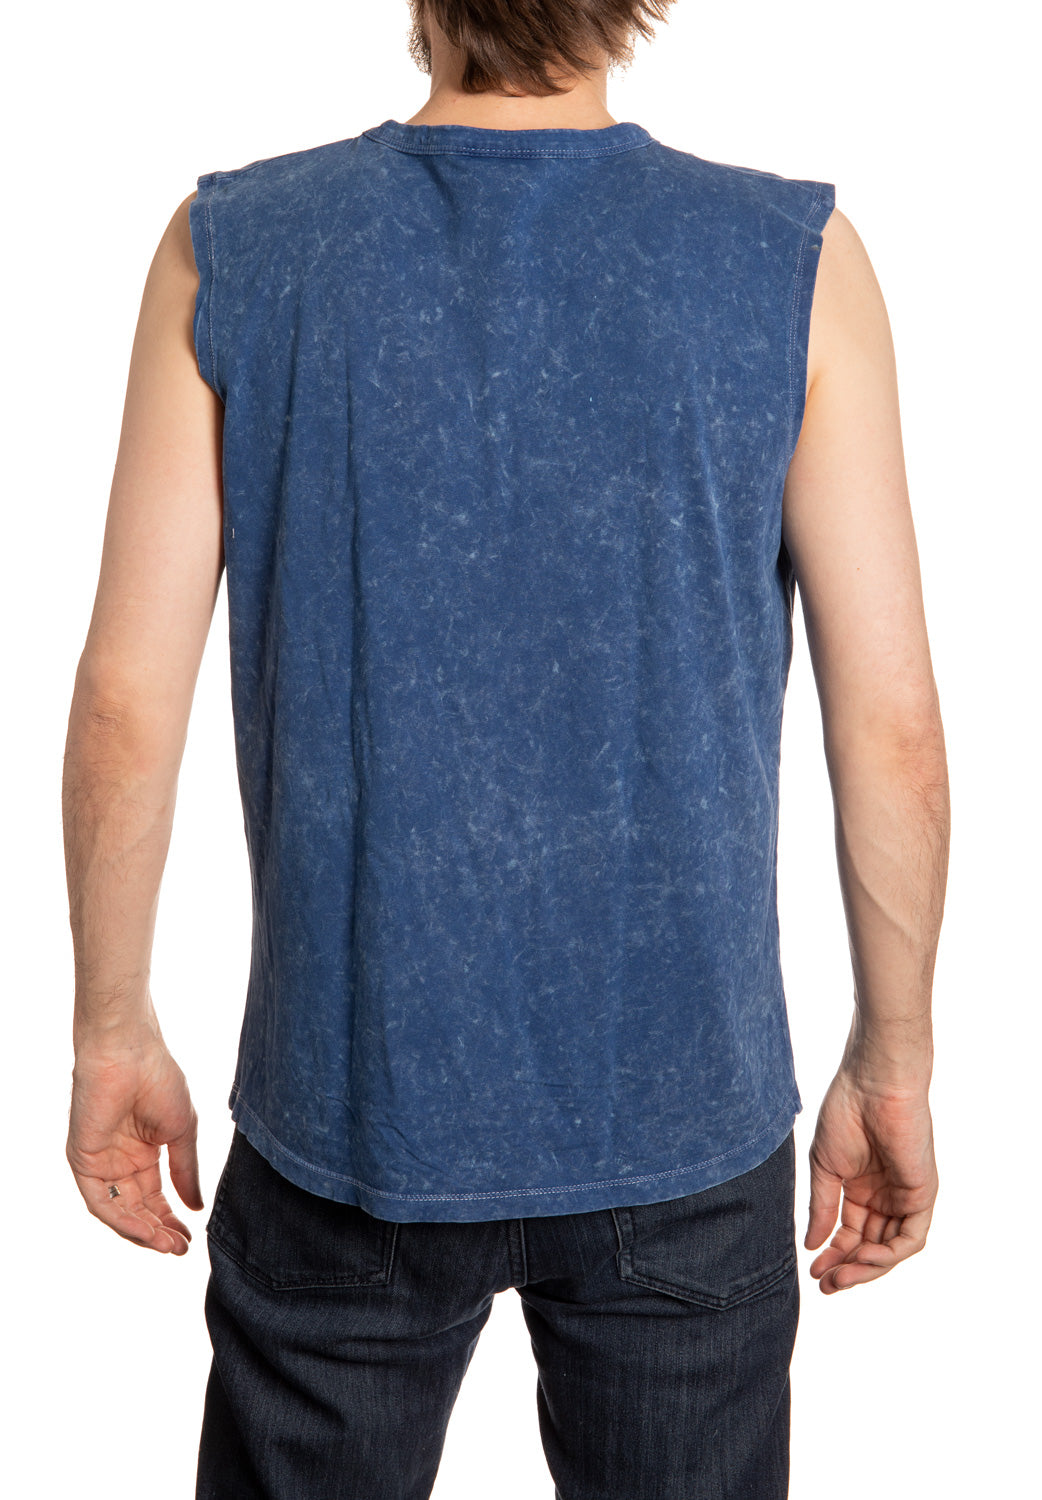 Toronto Maple Leafs Acid Washed Sleeveless Shirt Back View